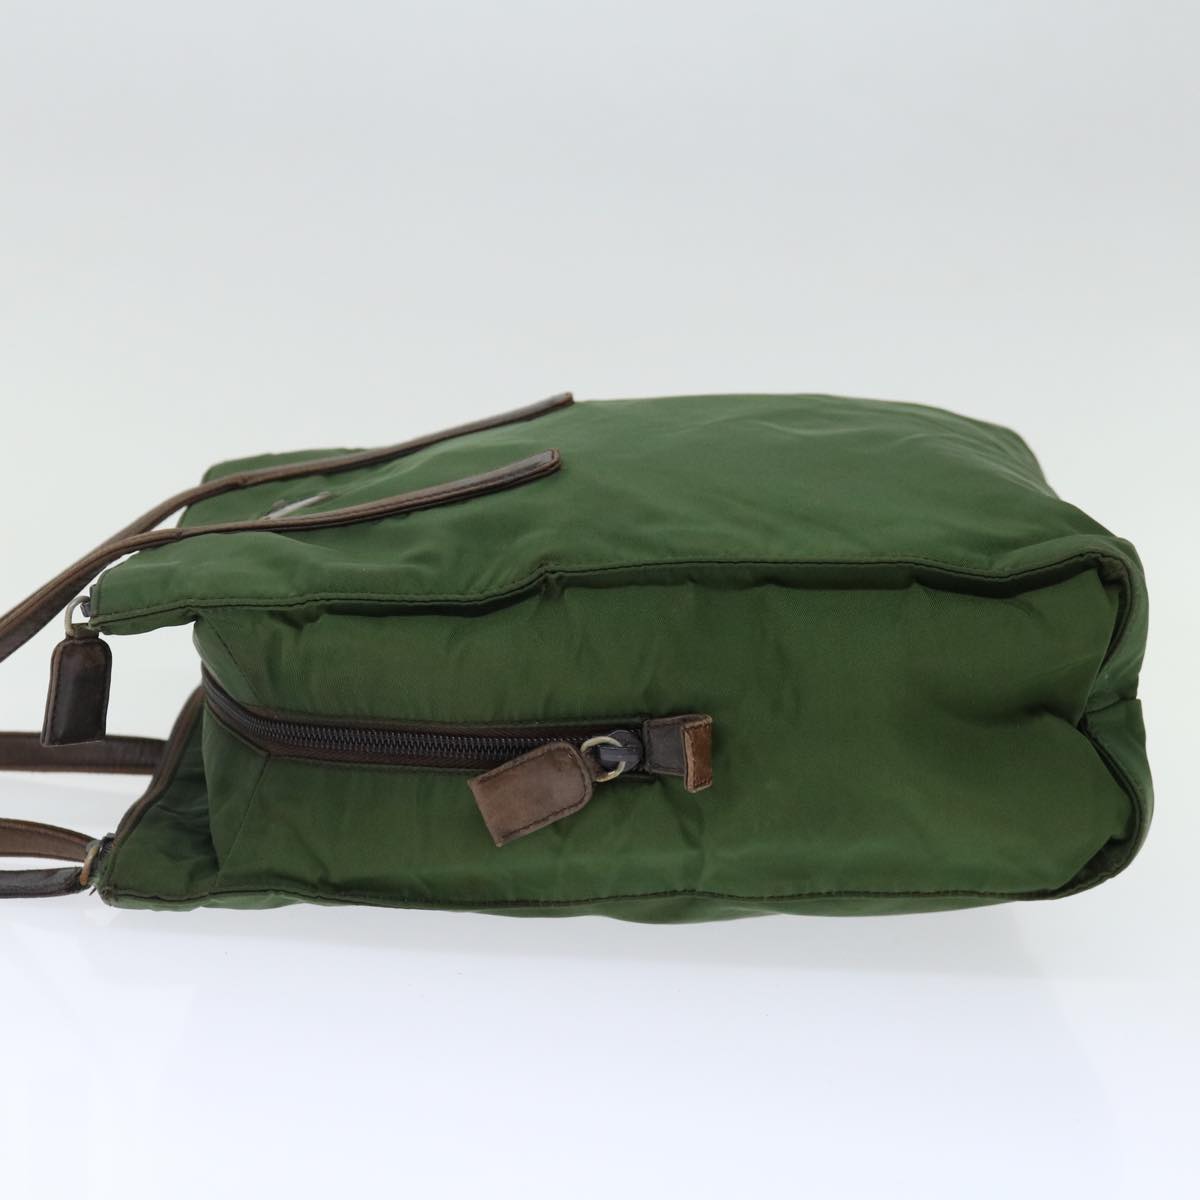 PRADA Hand Bag Nylon Khaki Auth 72610